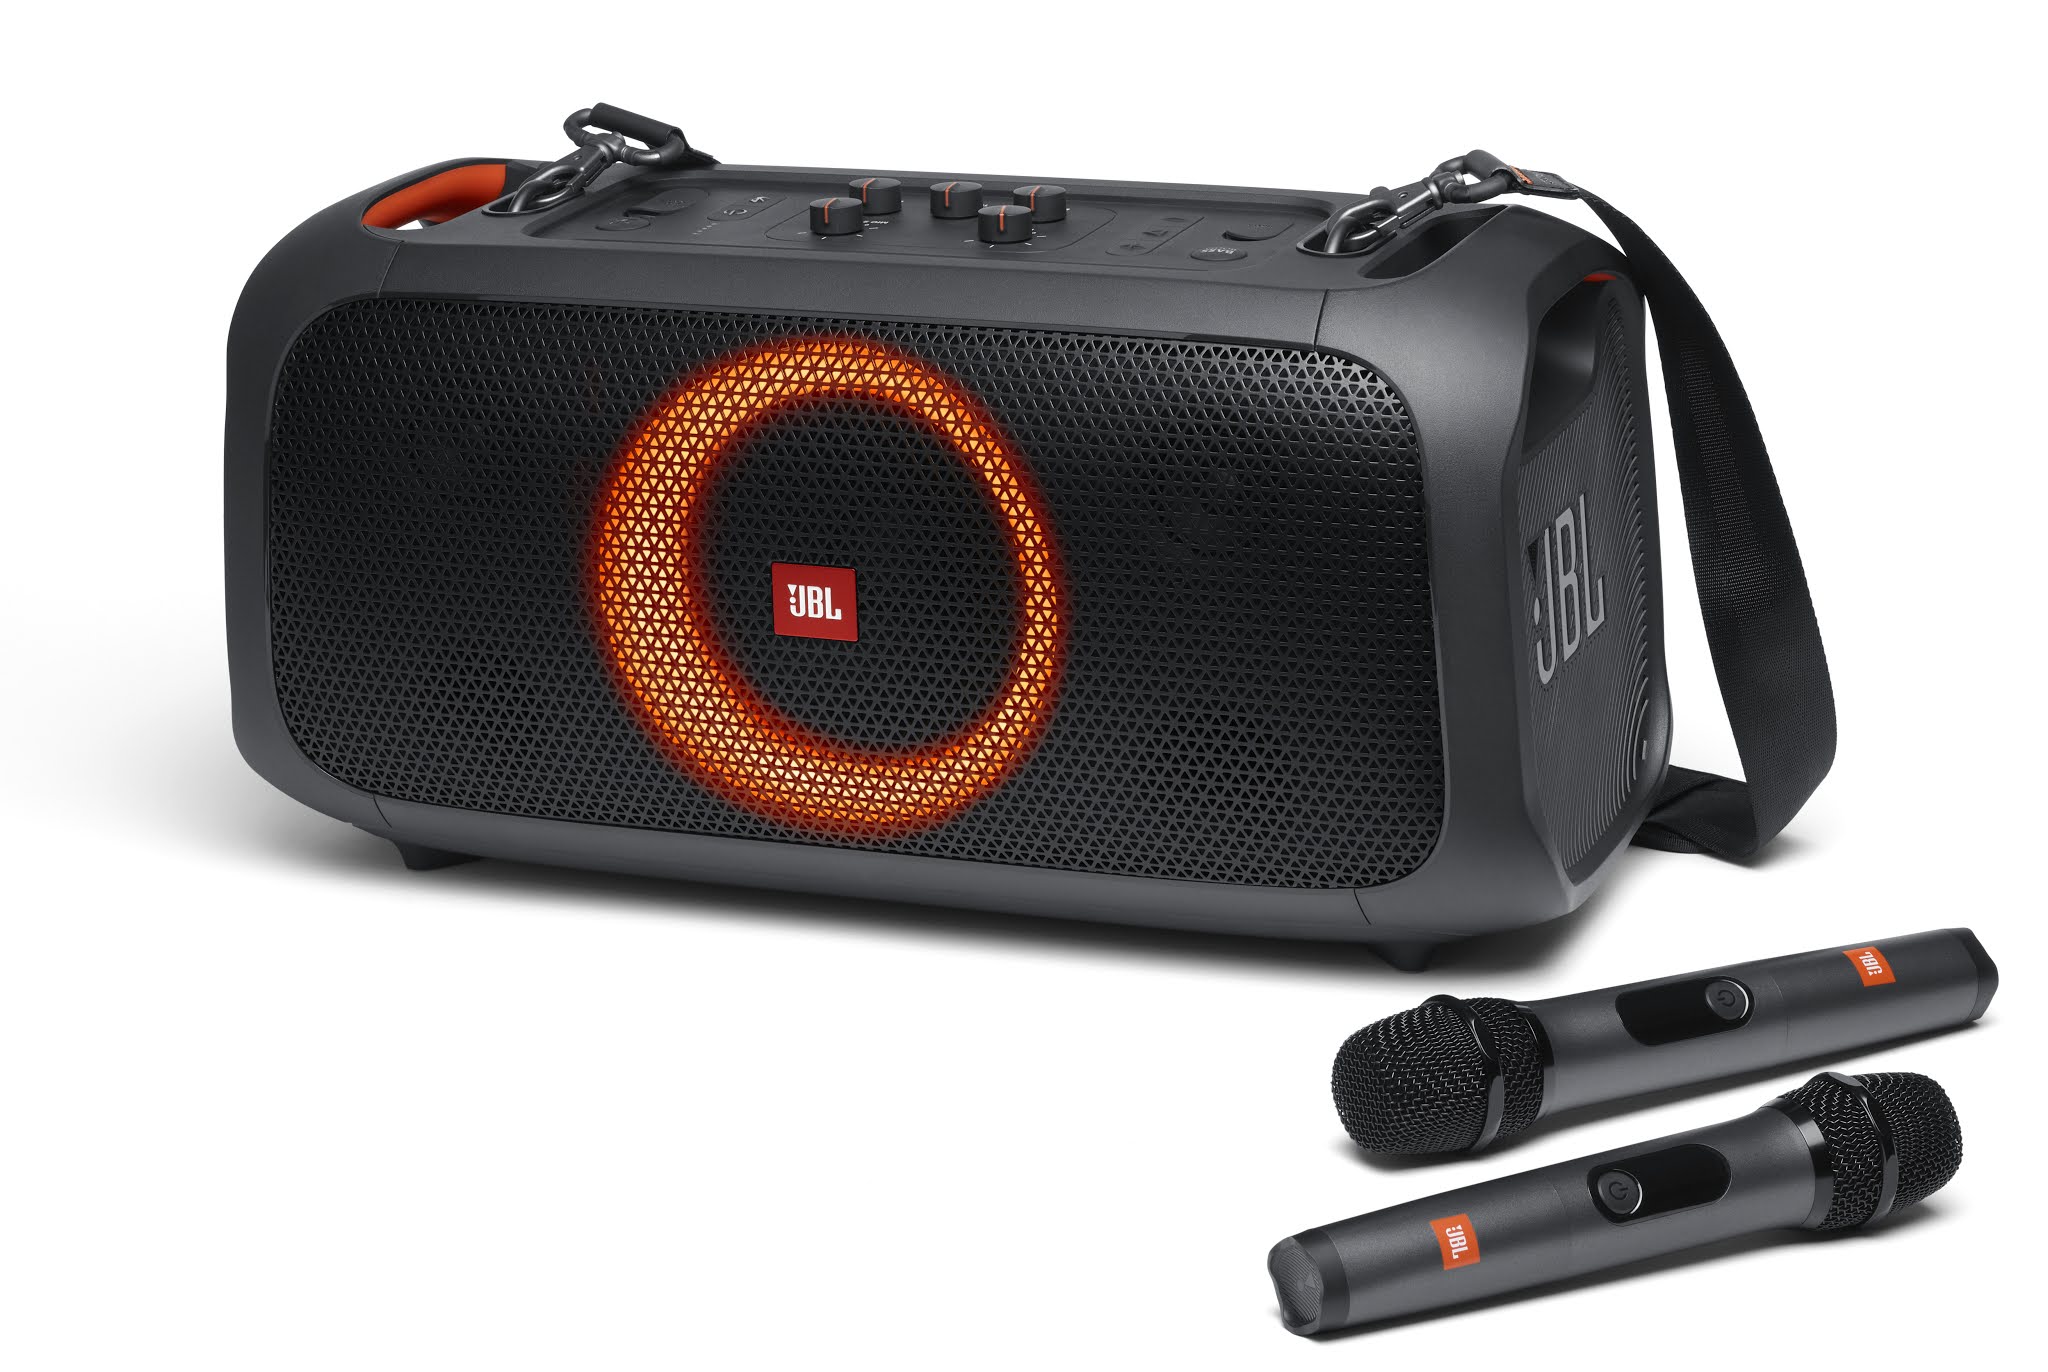 JBL strengthens audio expertise with enhanced line of Headphones and Speakers Mermaid in